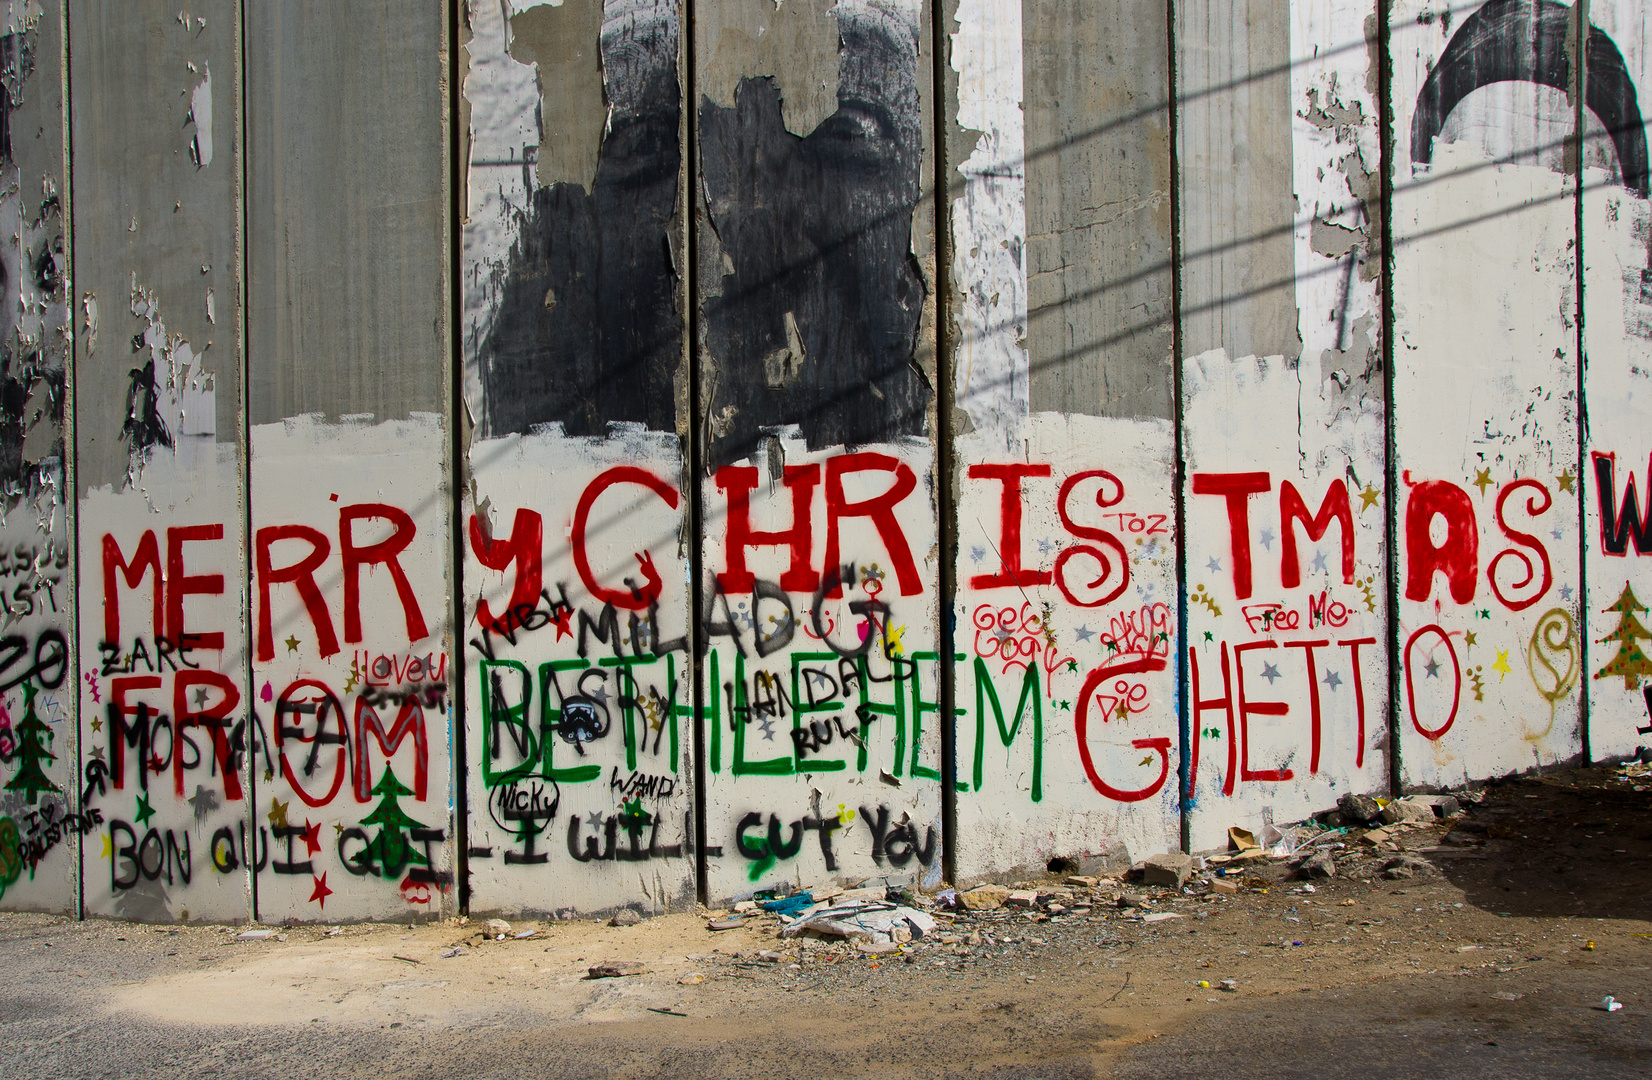 "Merry Christmas from Bethlehem Ghetto"